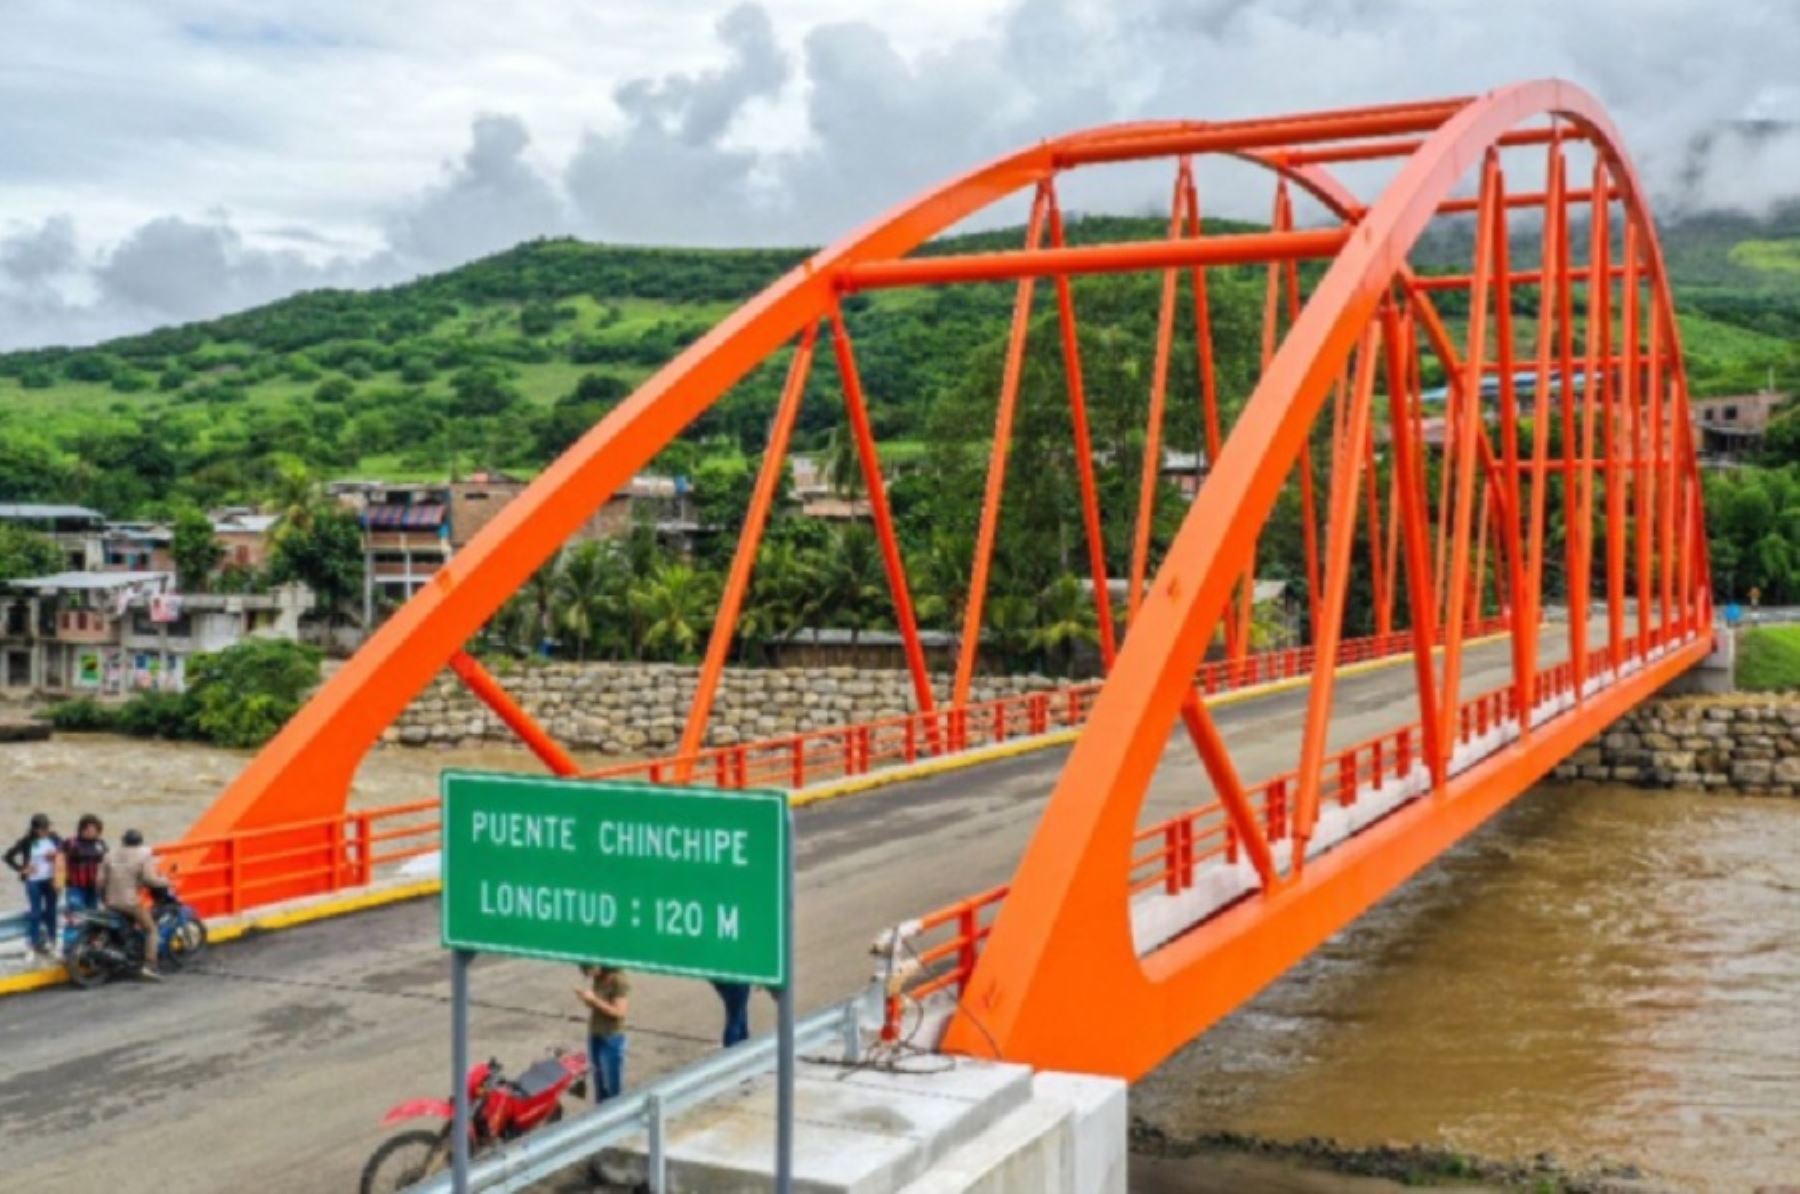 MTC construyó 652 puentes para fortalecer la integración del país con sus zonas rurales. Foto: MTC.